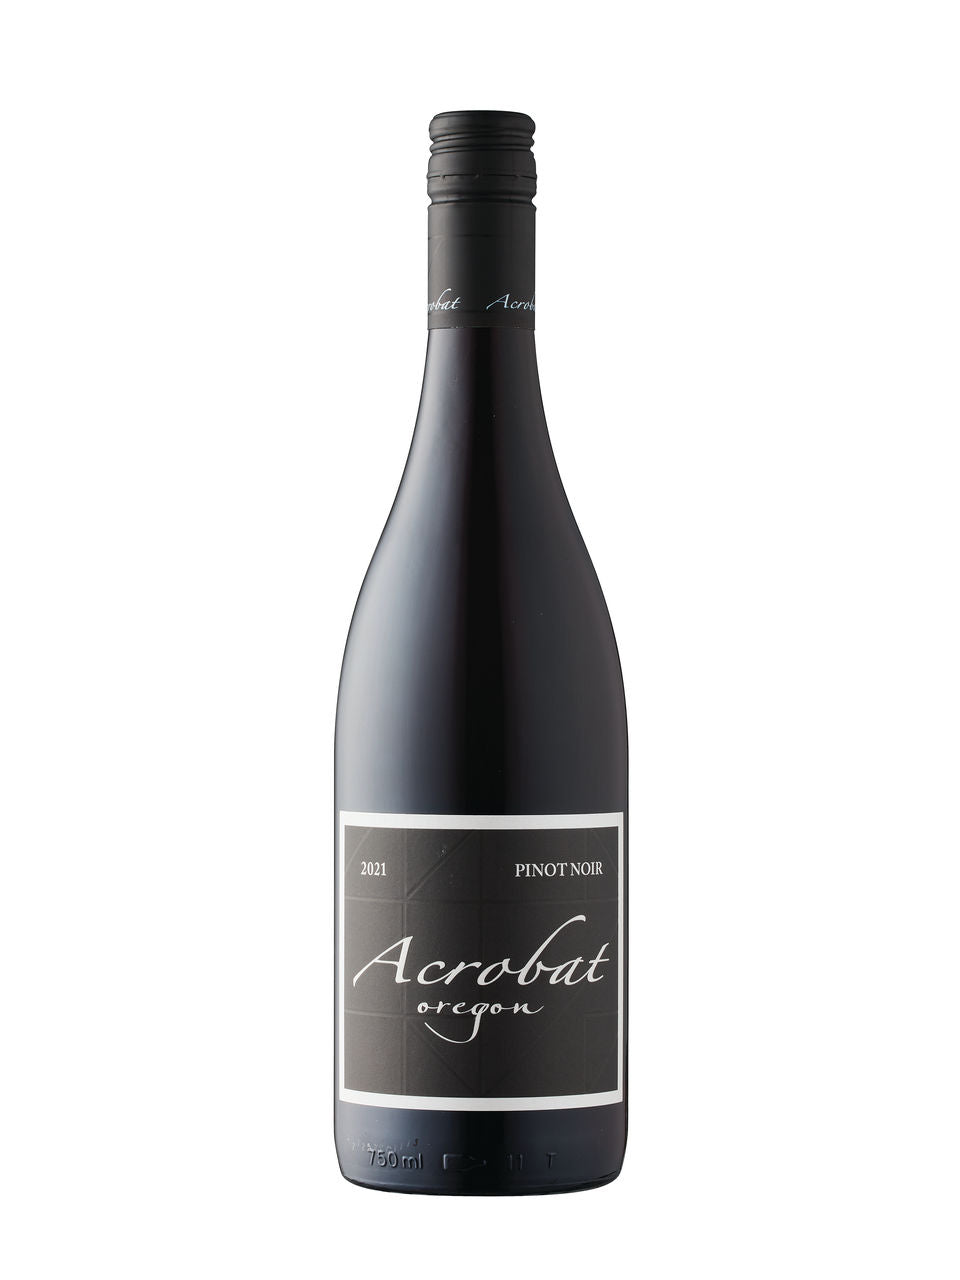 Acrobat Pinot Noir 2021  750 mL bottle  VINTAGES